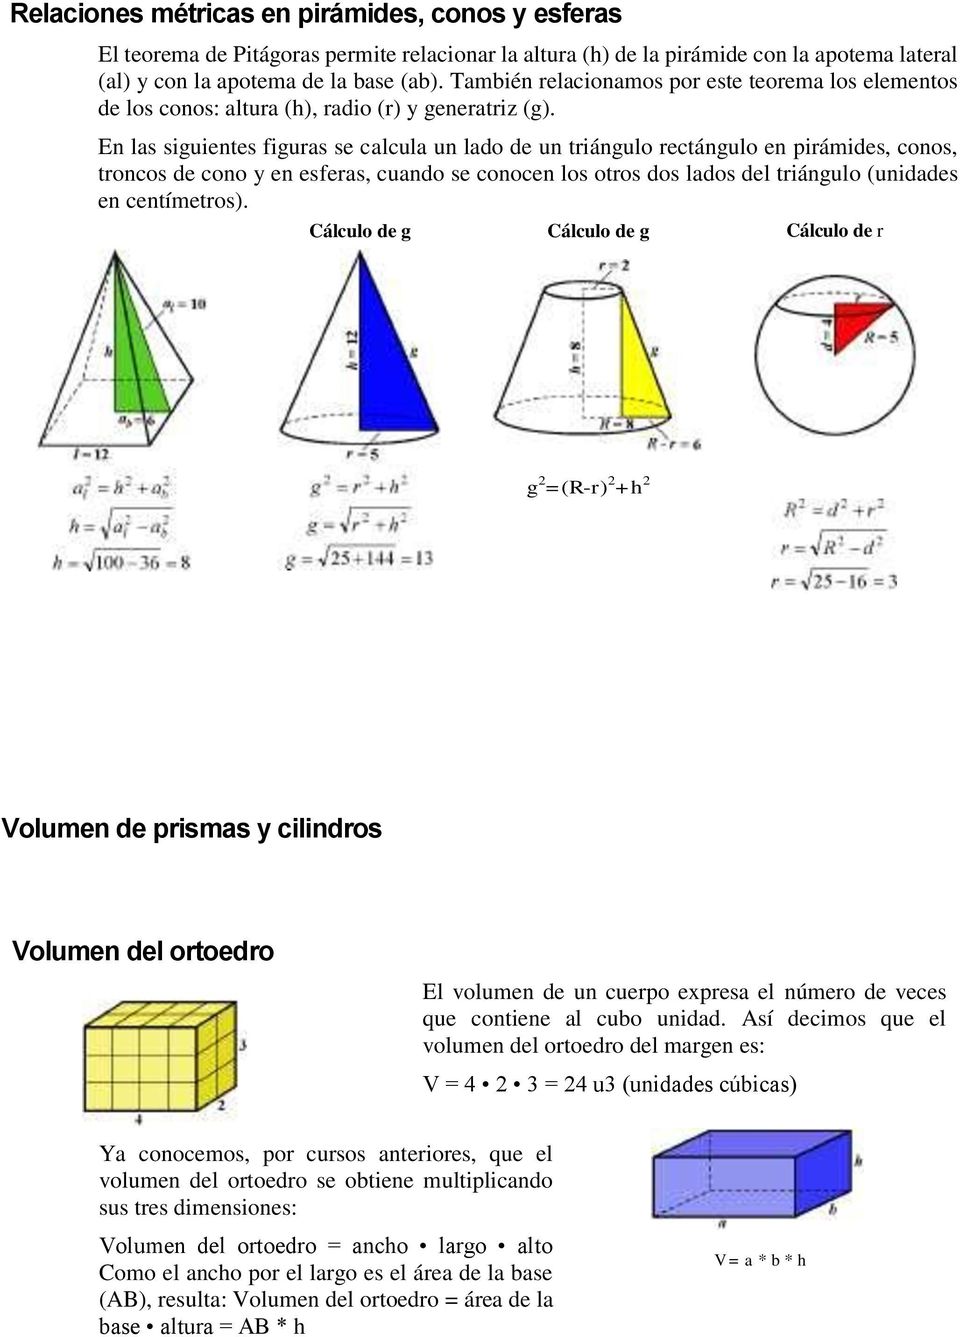 En las siguientes figuras se calcula un lado de un triángulo rectángulo en pirámides, conos, troncos de cono y en esferas, cuando se conocen los otros dos lados del triángulo (unidades en